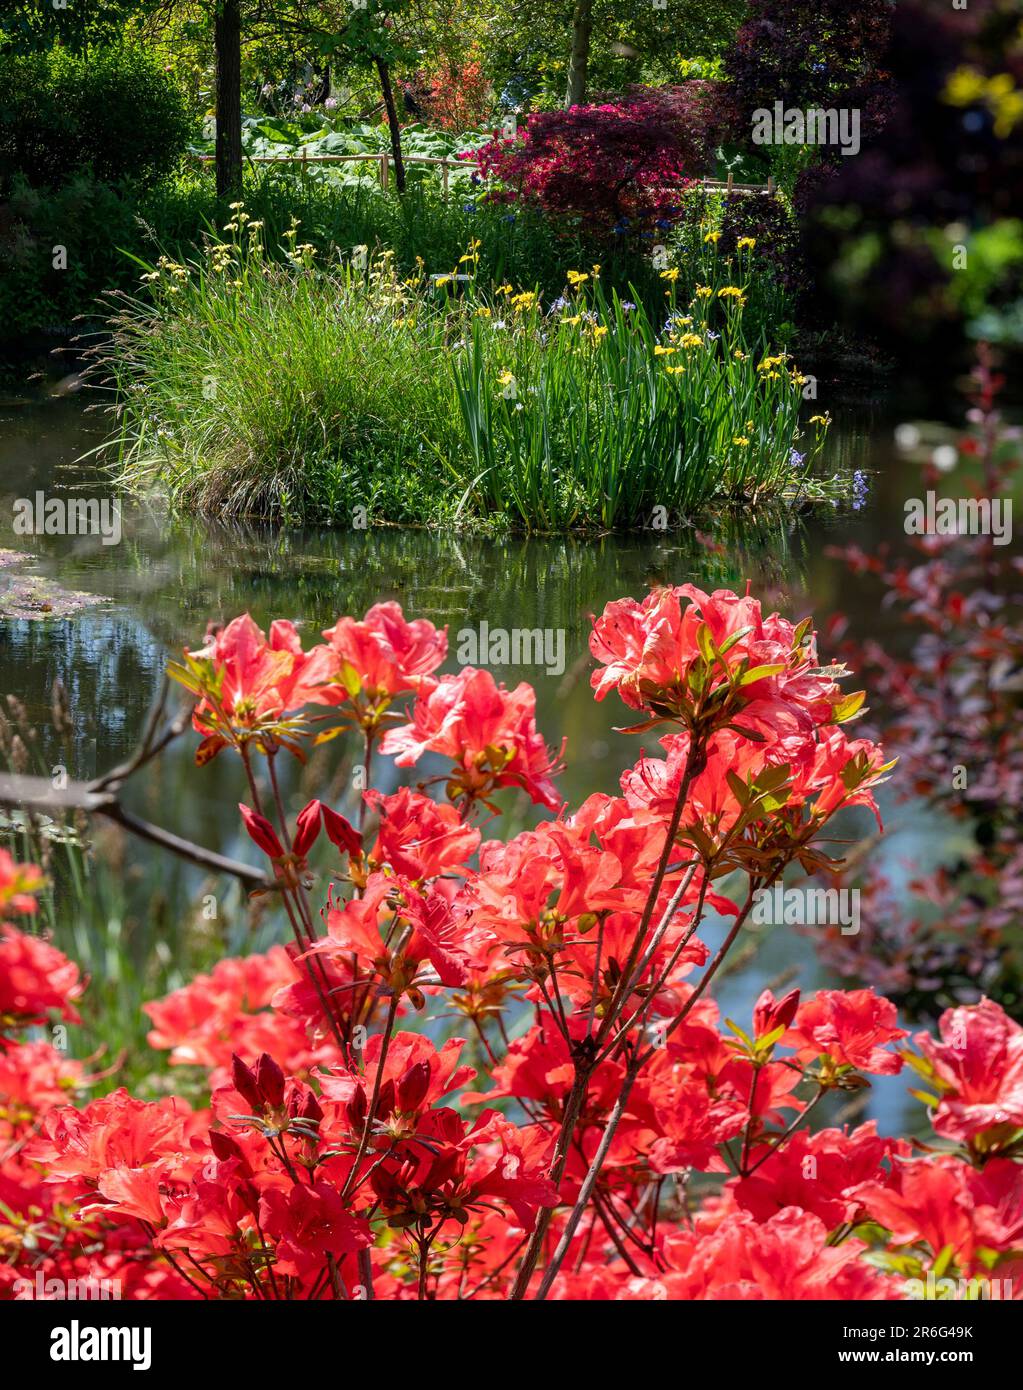 Piante con fiori rossi e gialli al laghetto lilli acqua nel giardino ex dell'artista Claude Monet nel villaggio di Giverny, Francia Foto Stock